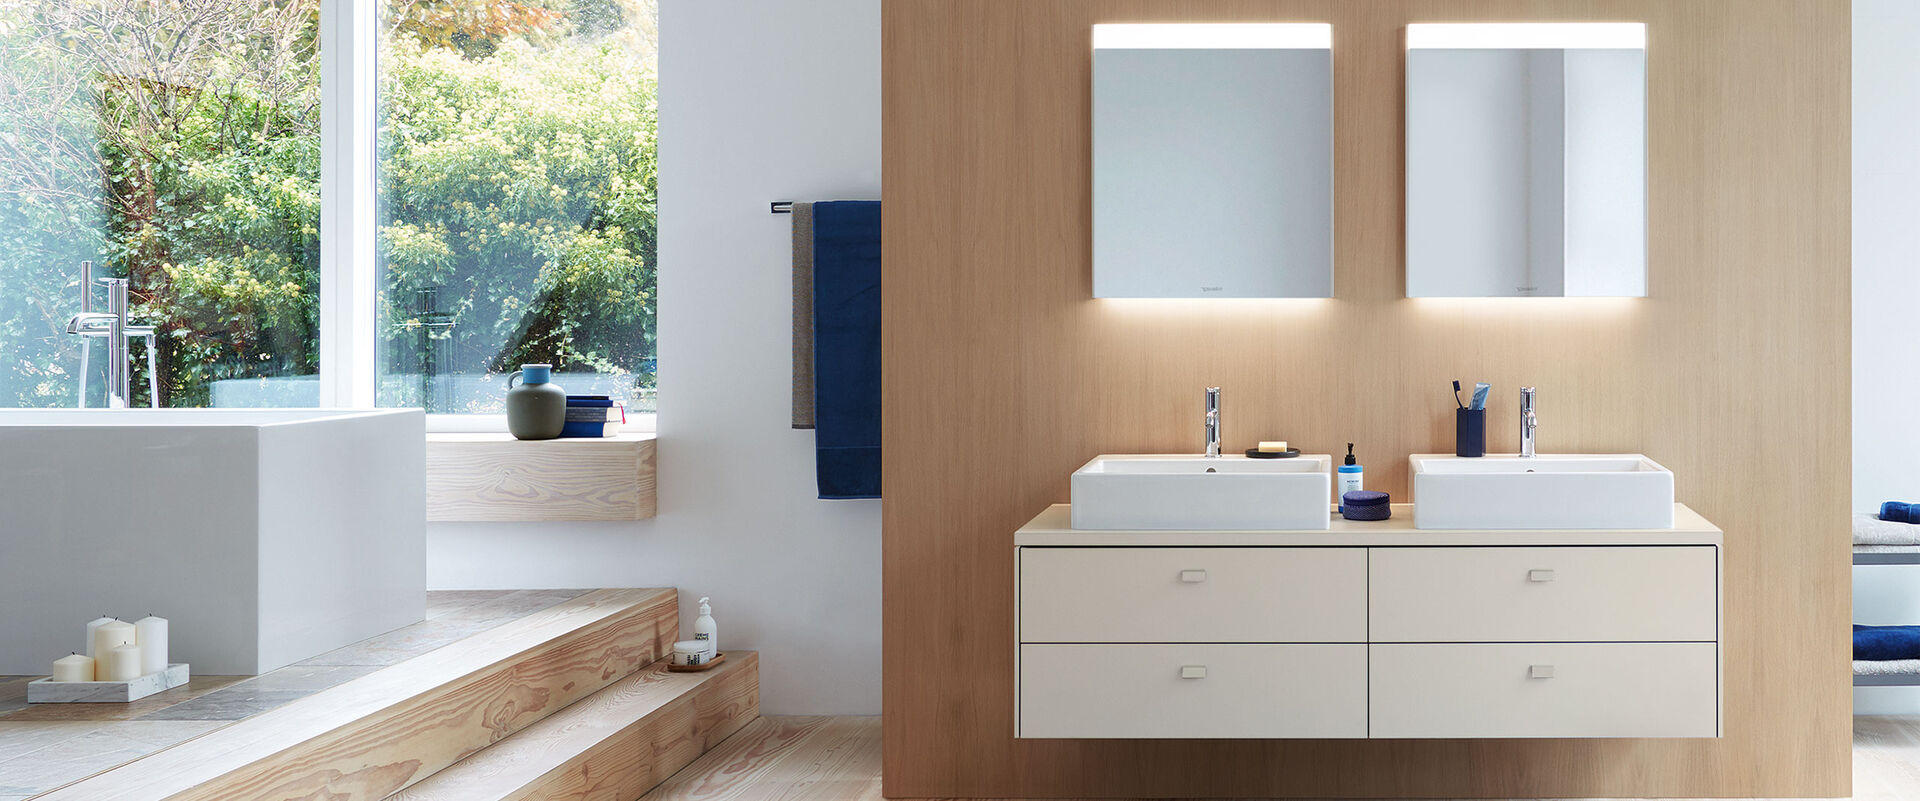 Badambiente mit Doppelwaschbecken und helle Badmöbel- Beleuchtete spiegel und eine Badewanne.